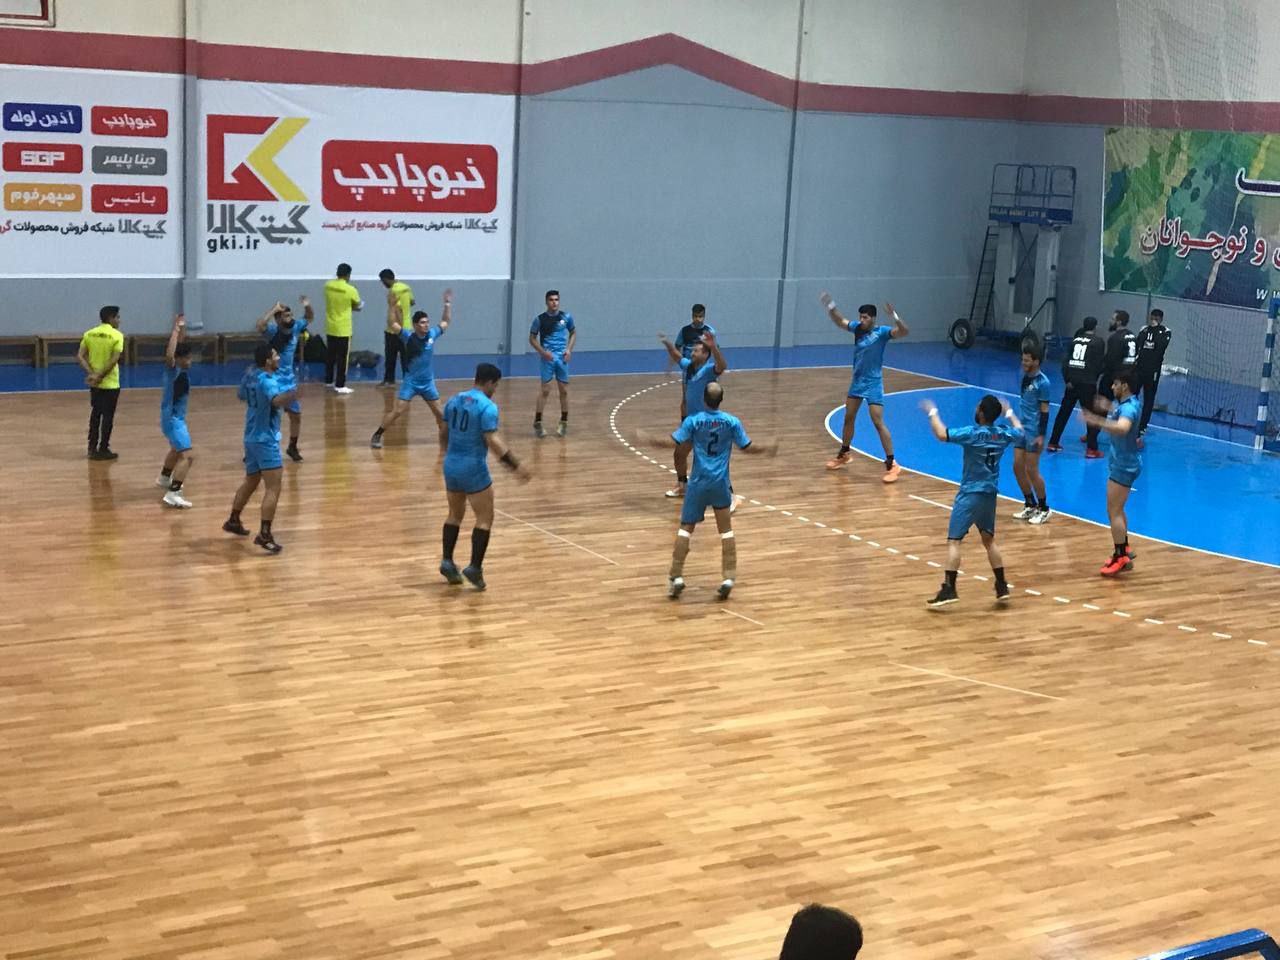 مصاف تیم هند بال فردوس با تیم گیتی پسند اصفهان در لیگ دسته یک هندبال کشور